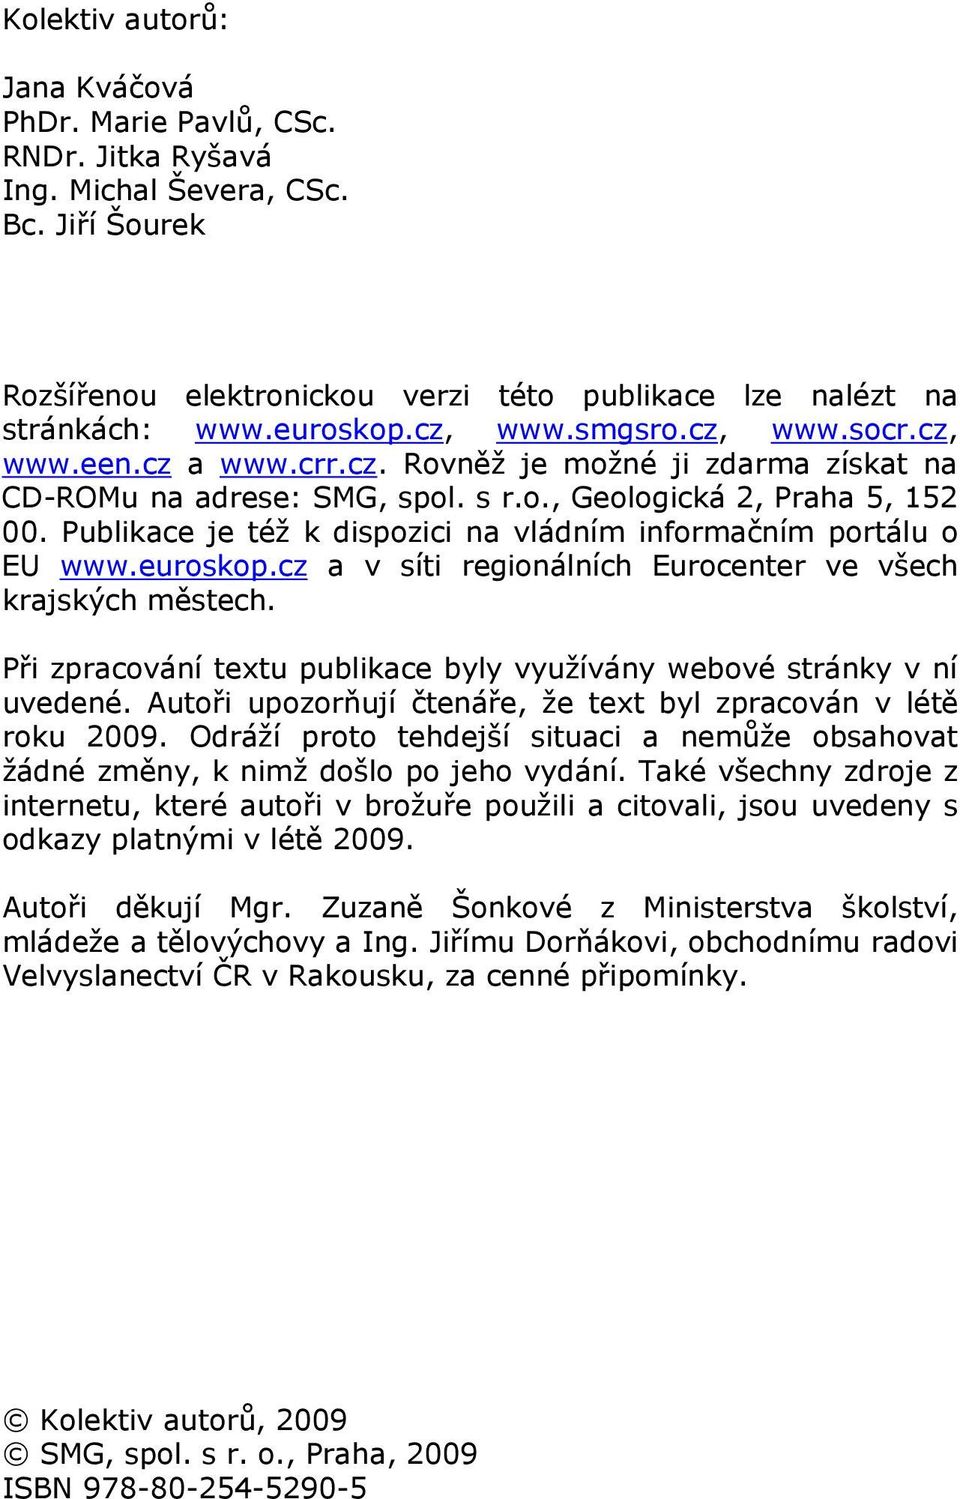 Publikace je též k dispozici na vládním informačním portálu o EU www.euroskop.cz a v síti regionálních Eurocenter ve všech krajských městech.